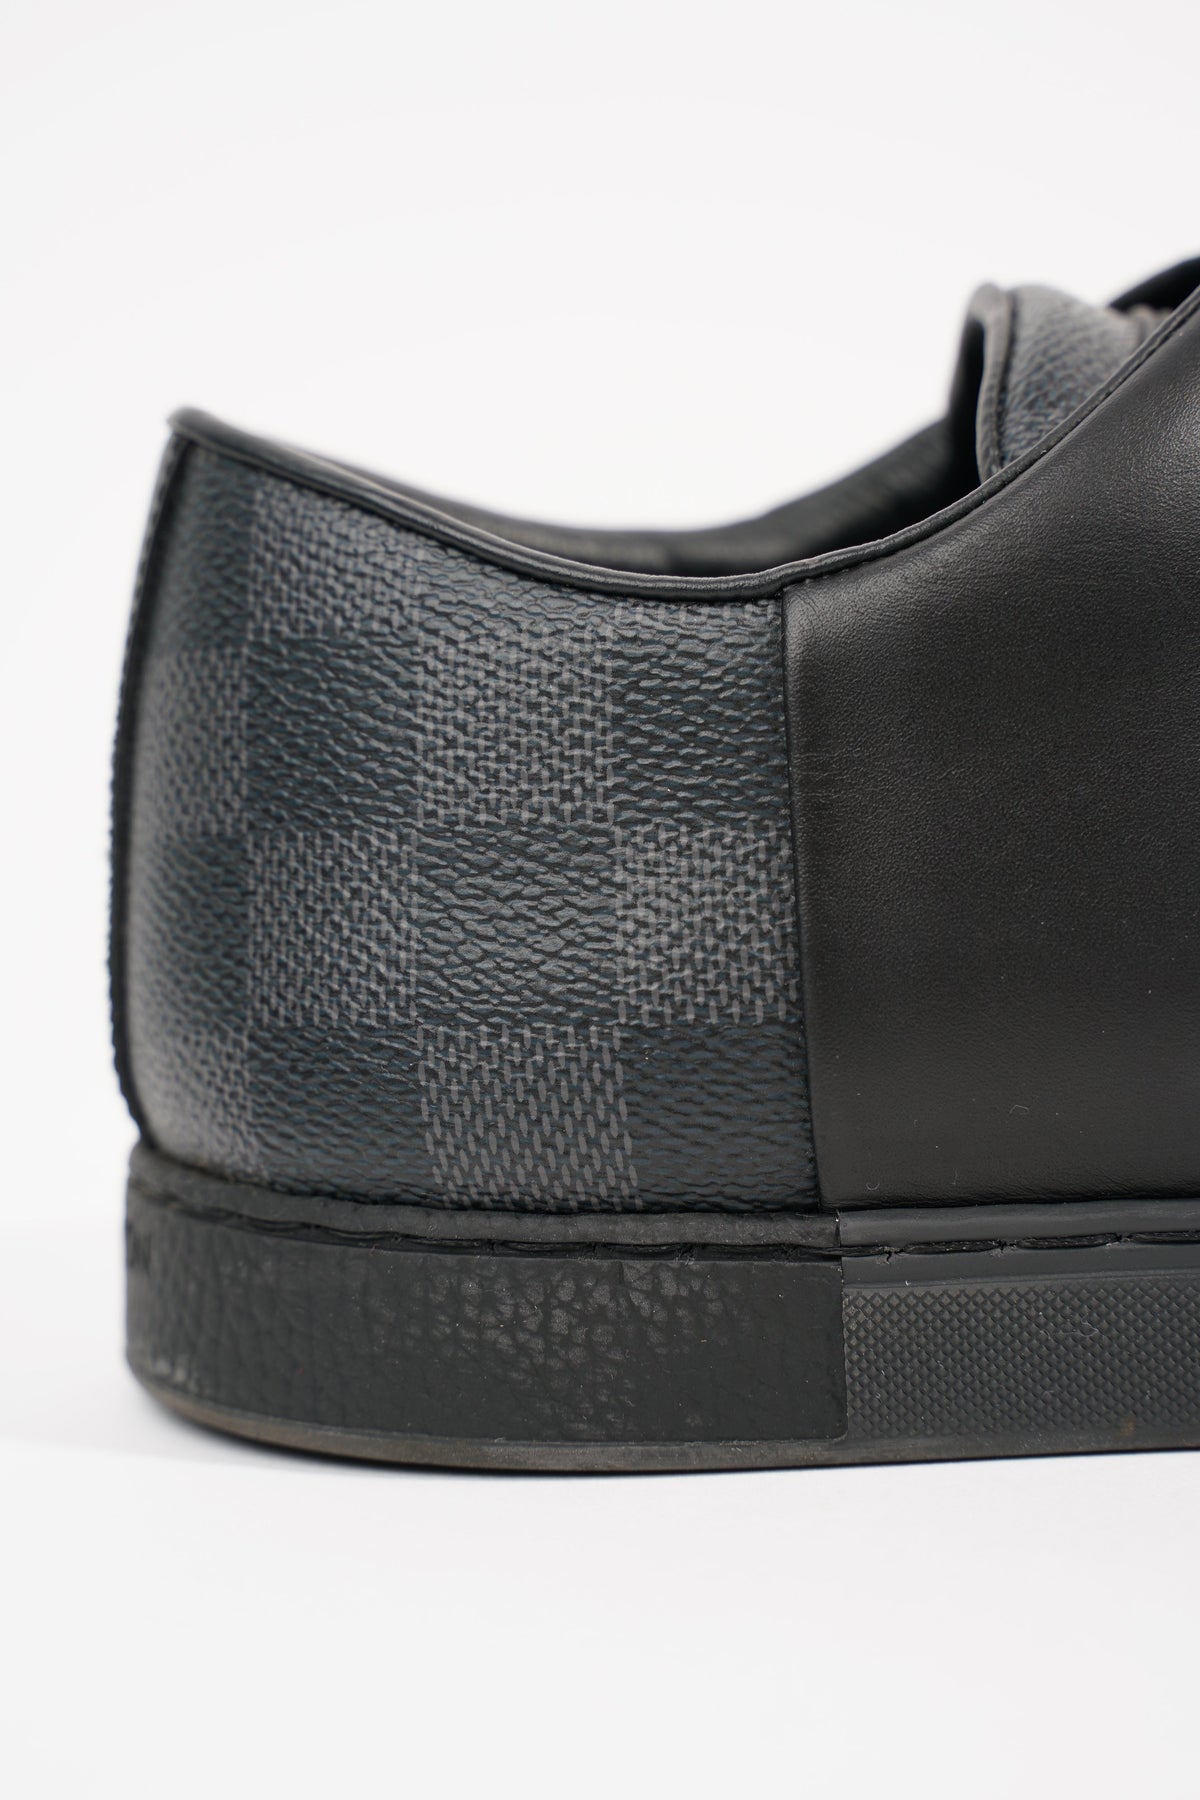 Louis Vuitton Shoes - UK-12/US-13 (EU 46 ) Leather Damier